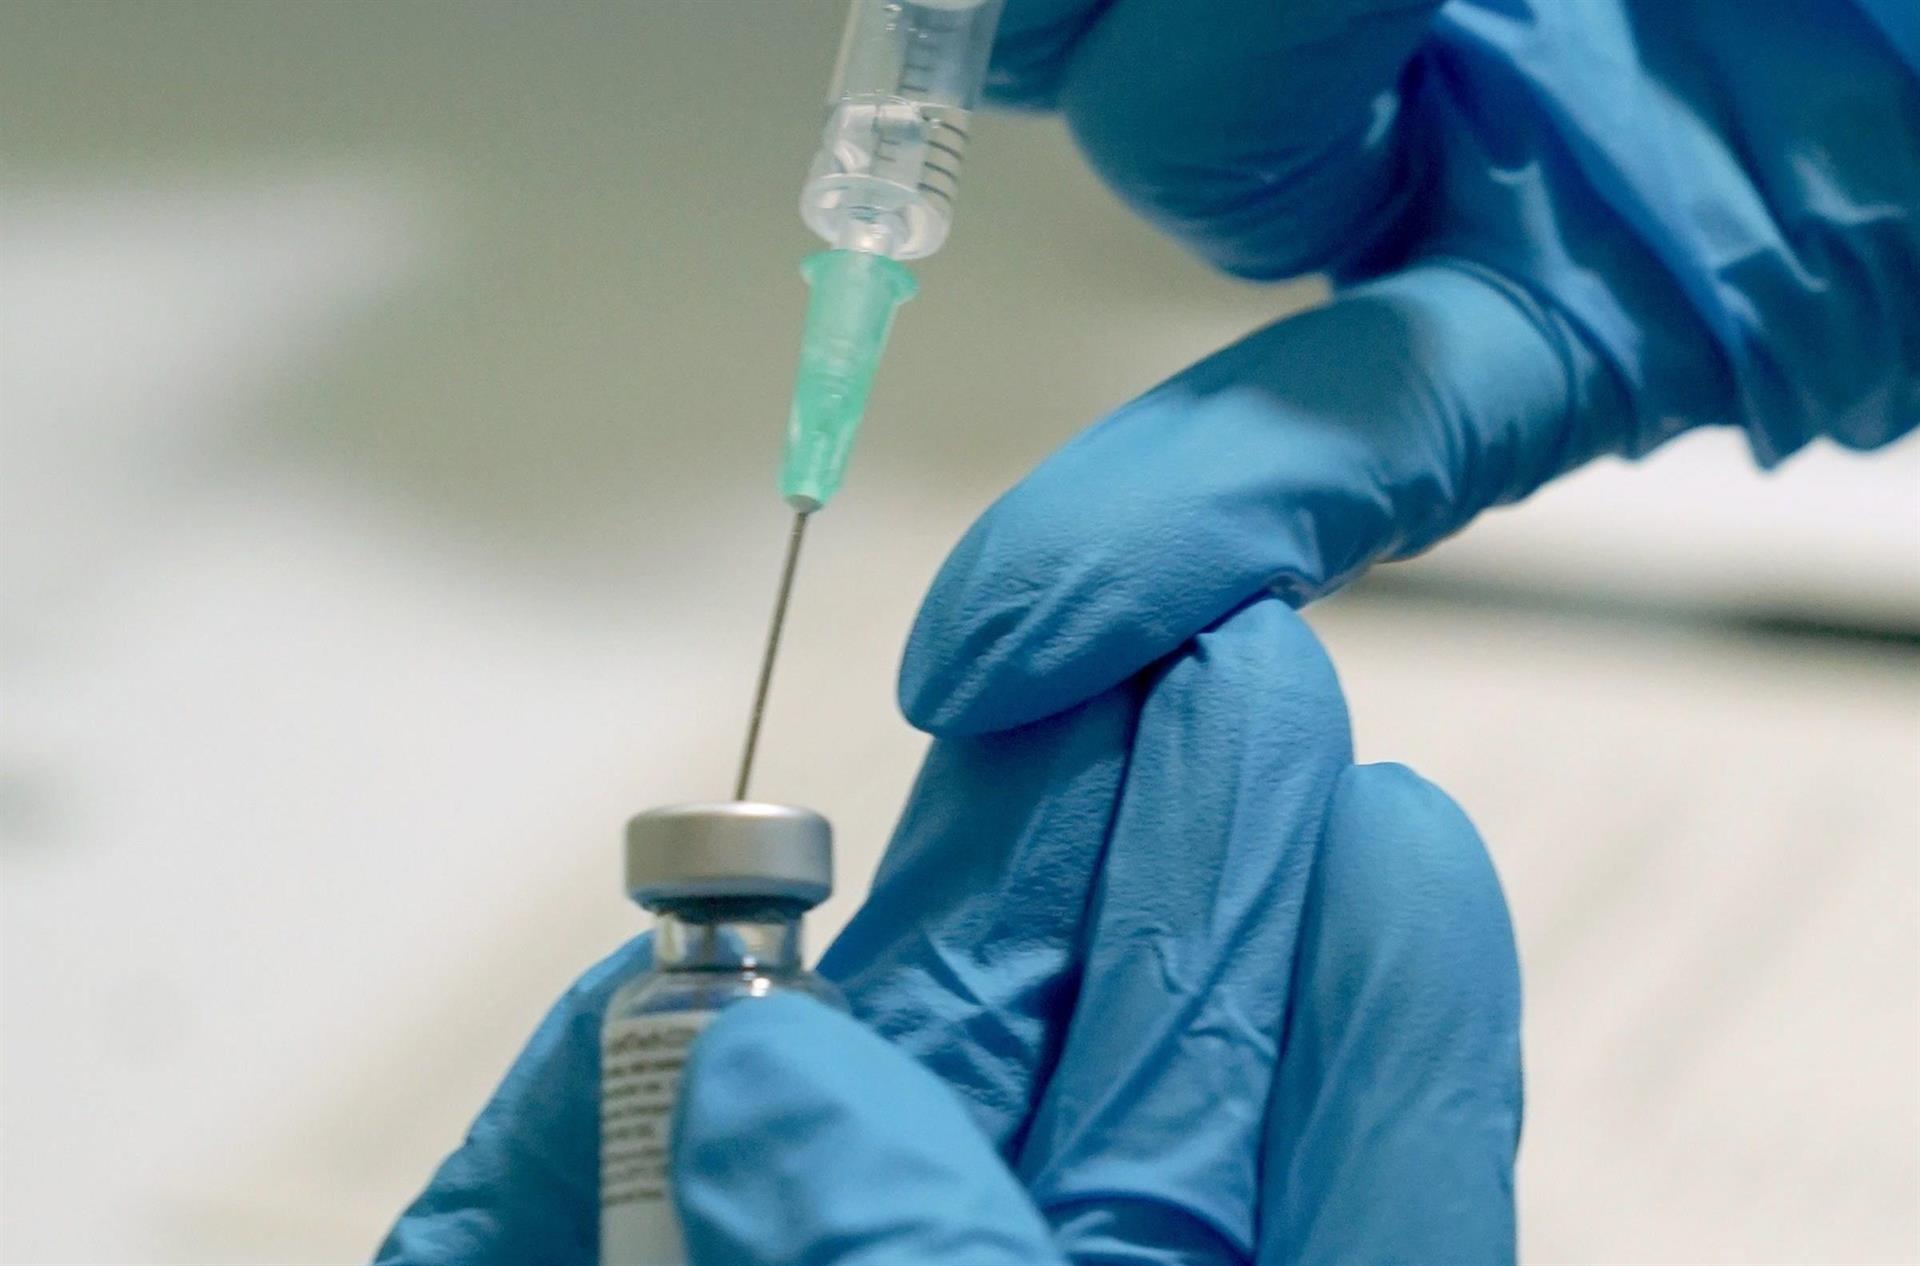 Profissional da saúde coloca vacina contra Covid-19 em seringa para aplicação